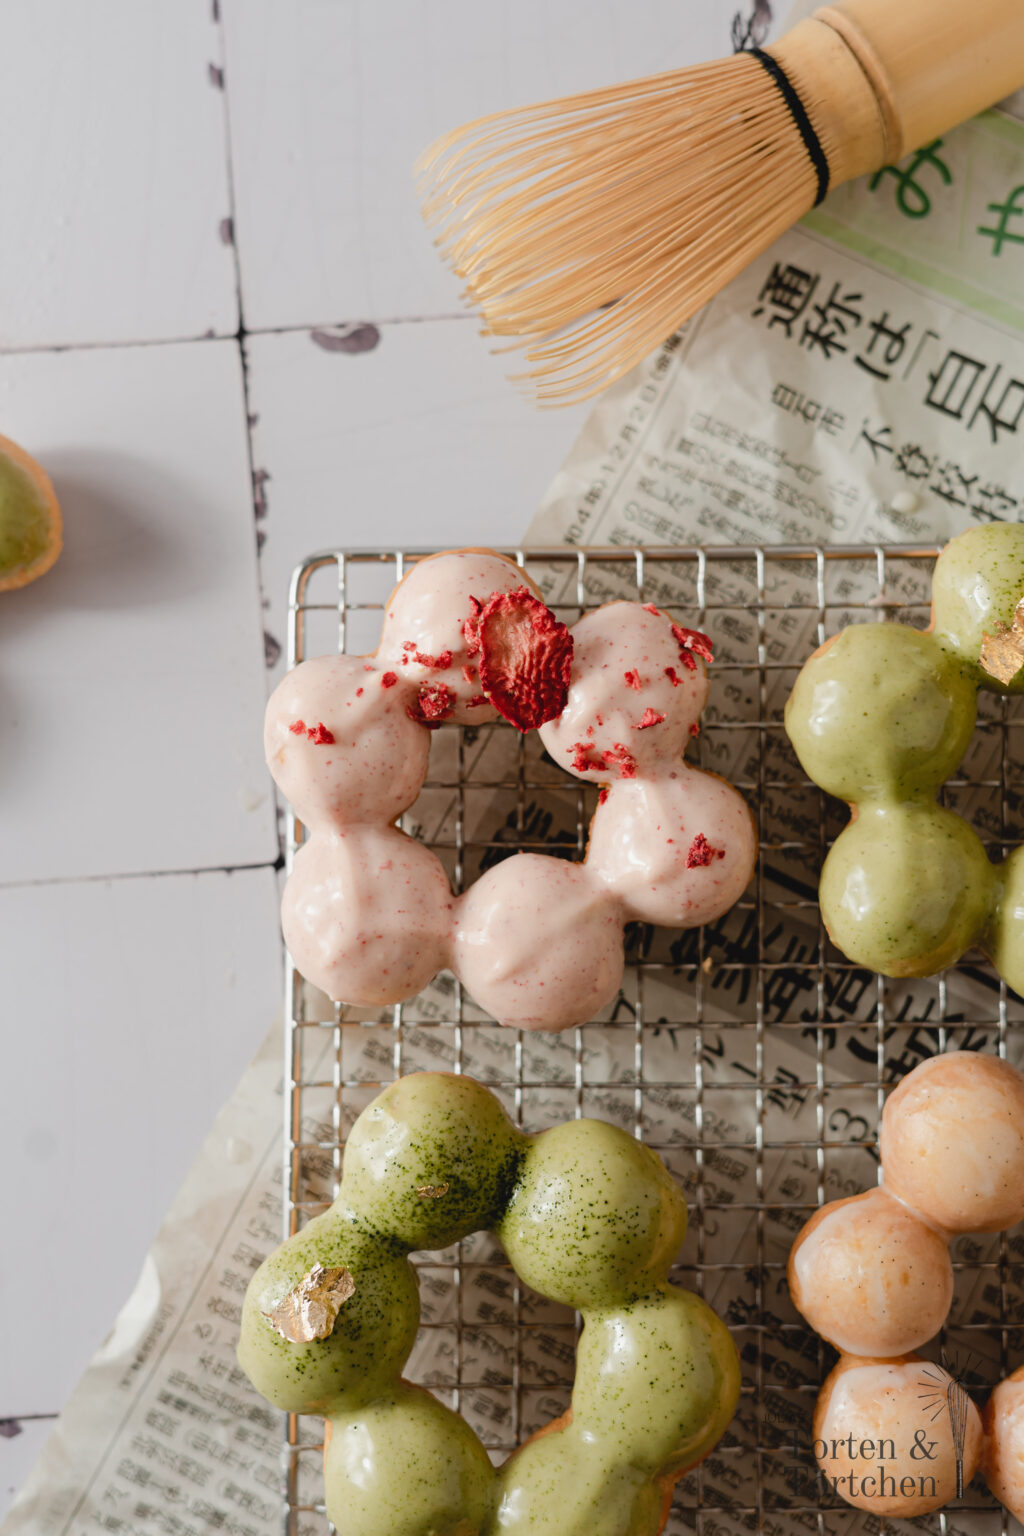 Rezept für super hübsche japanische Mochi Donuts mit pastelligen Glasuren aus Matcha, Erdbeeren und Vanille. Mit ihrer luftigen, chewy Konsistenz sind Mochi Donuts nicht nur super lecker, sondern auch noch deutlich kalorienärmer als normale Donuts und machen beim auseinanderzupfen der einzelnen Teigkugeln auch noch super viel Spaß beim essen! #Mochi #Donuts #MochiDonuts #Rezept #Backen